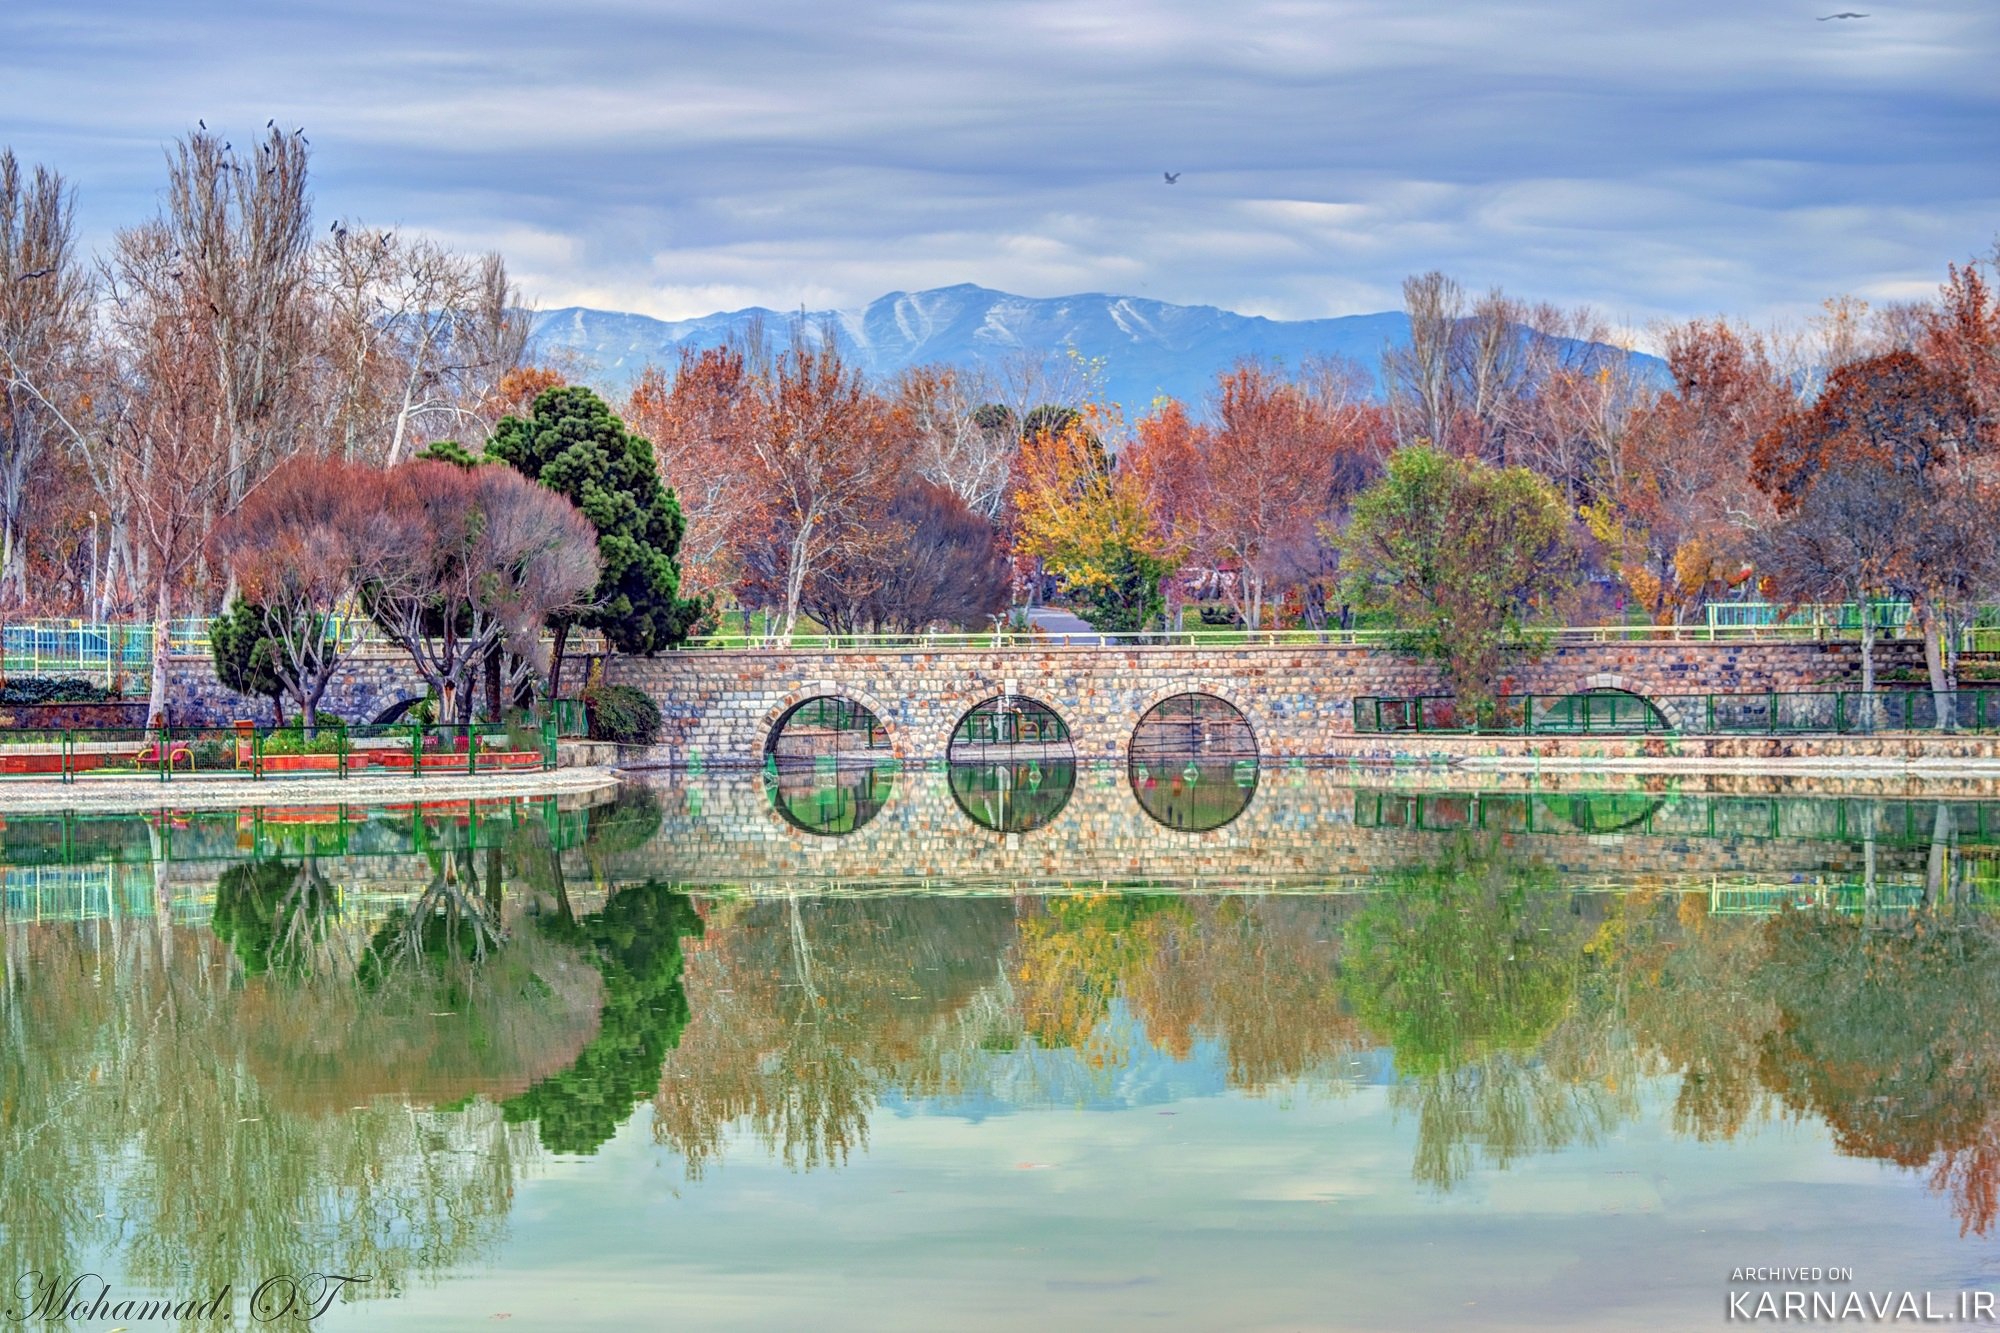 بهترین پارک های تهران: معروف ترین پارک های تهران کدام اند؟